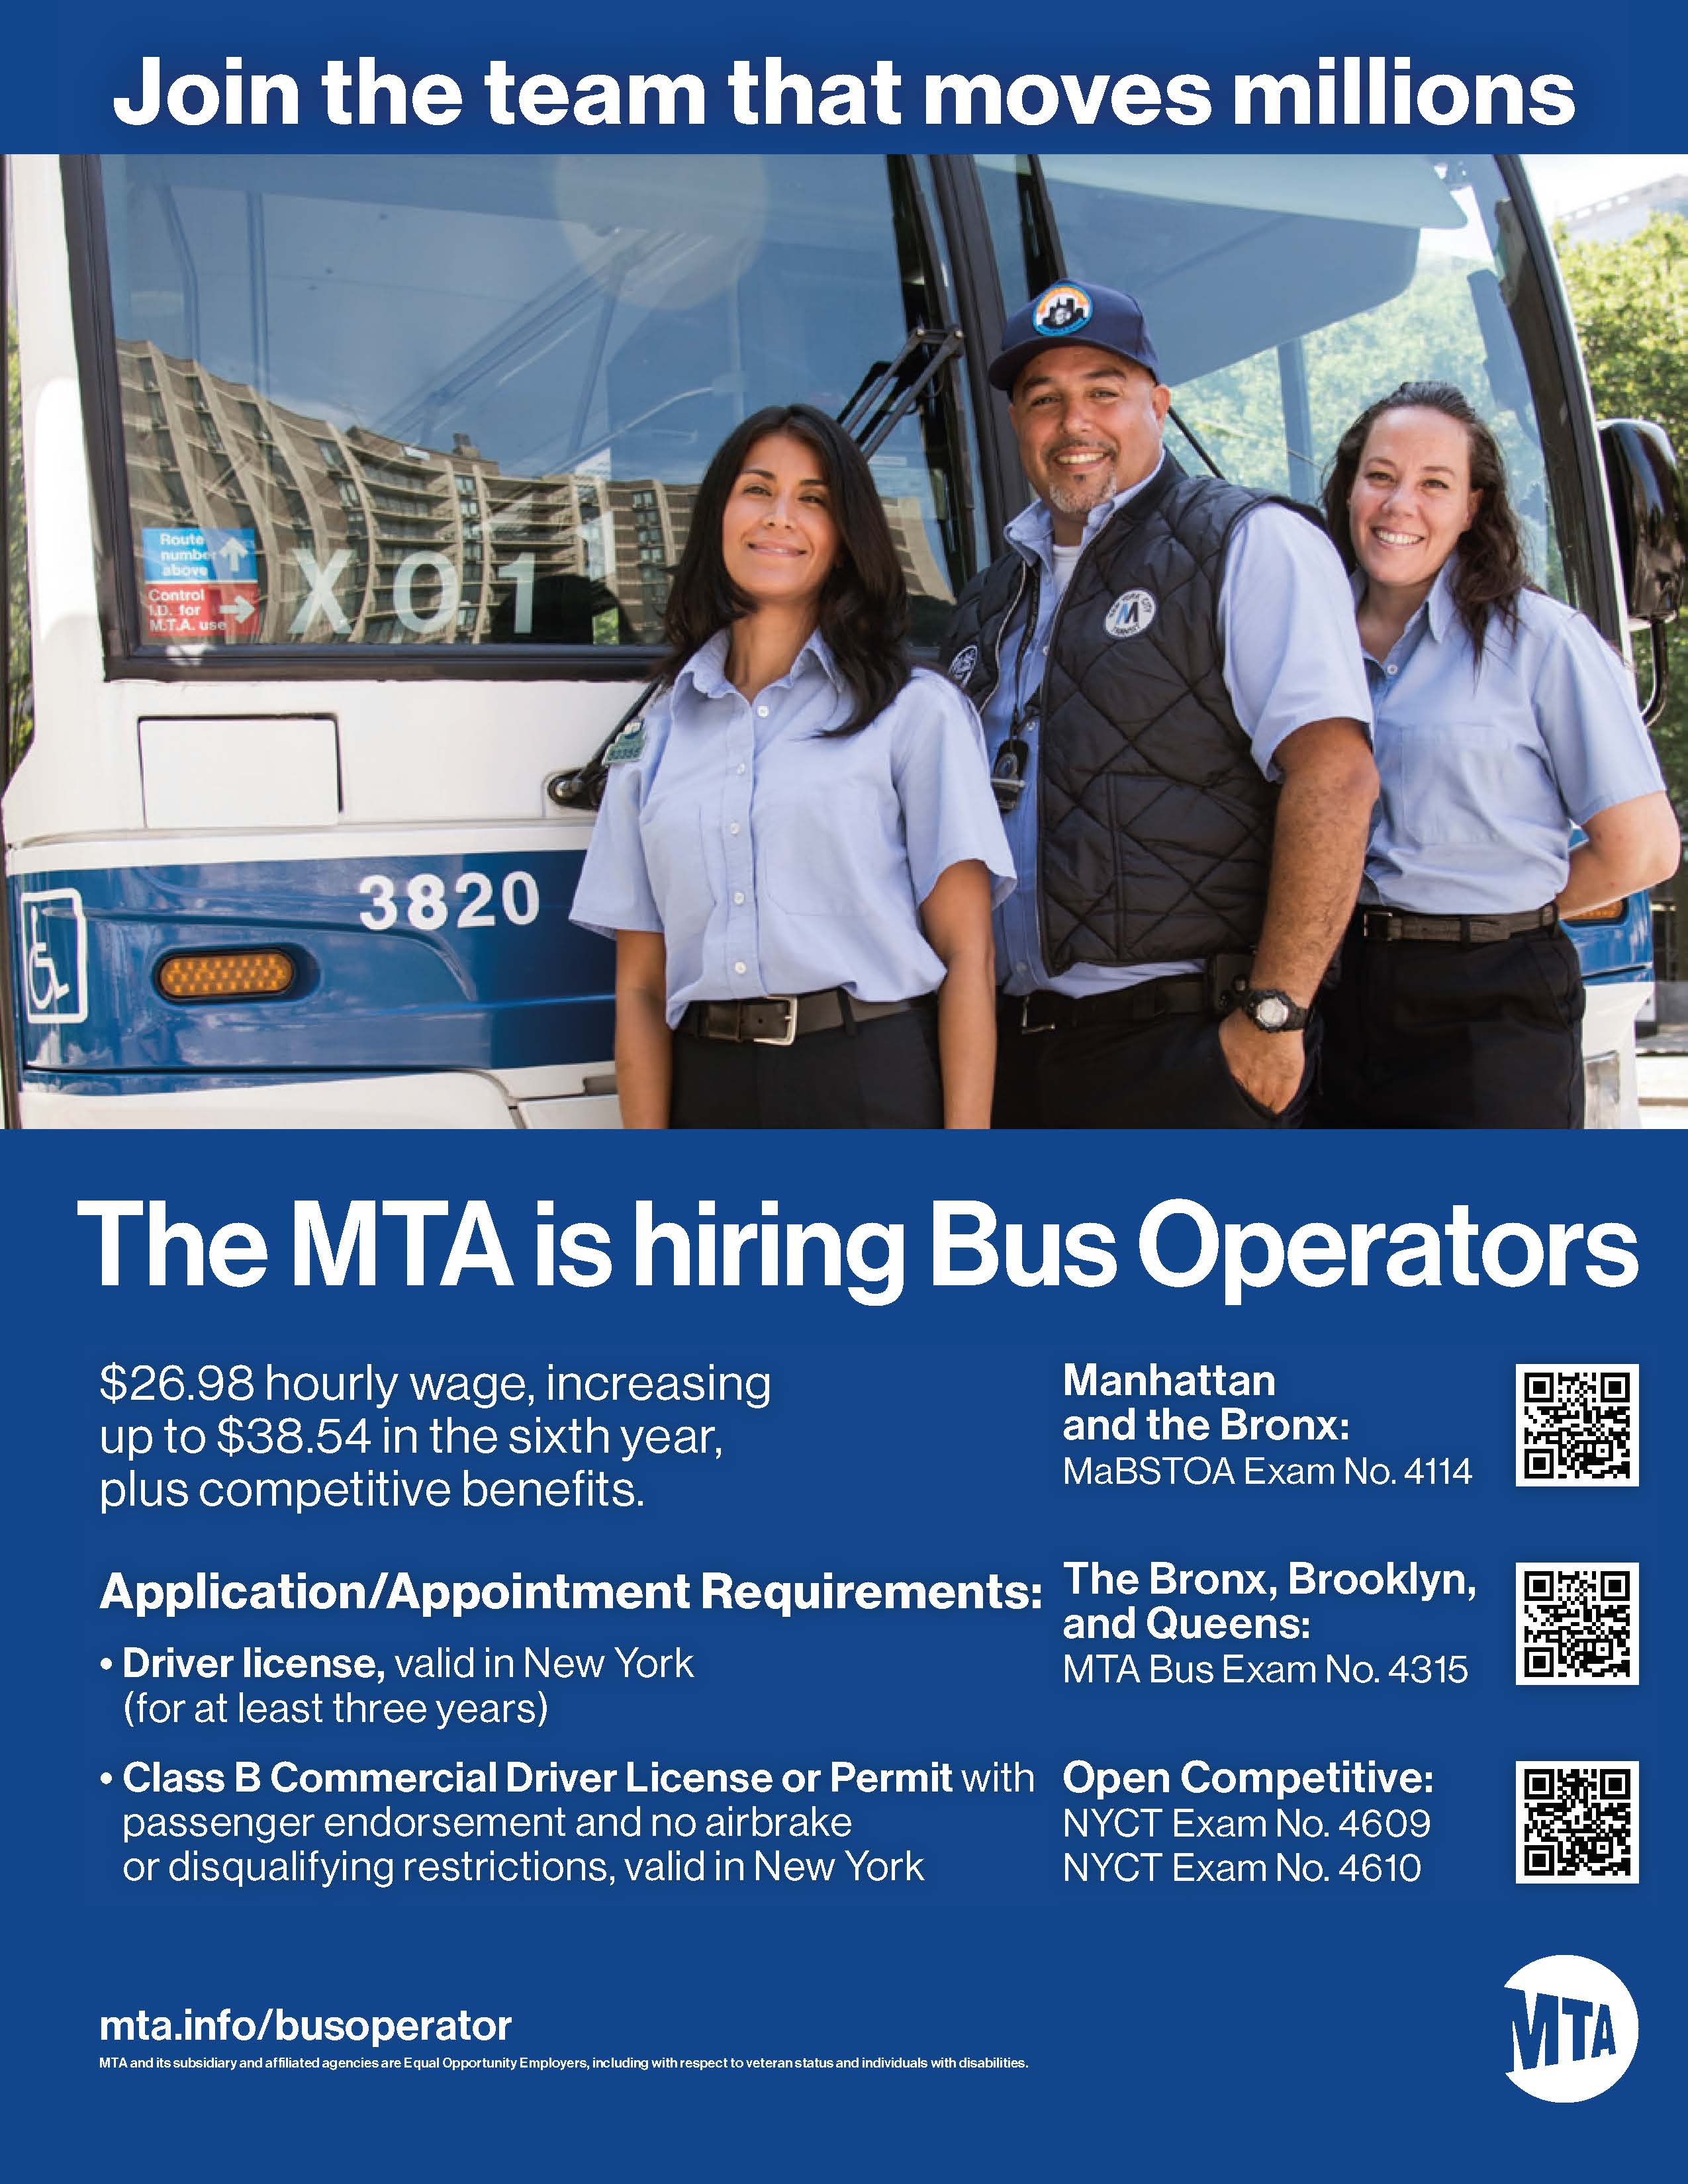 MTA Bus Operators